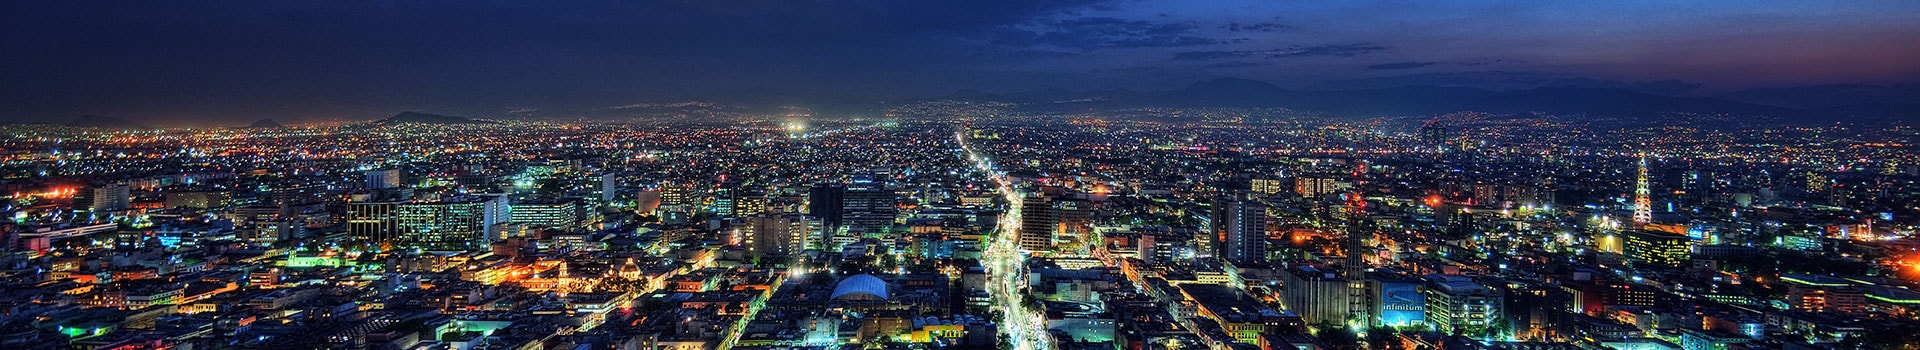 Santiago du chili - Ciudad de México